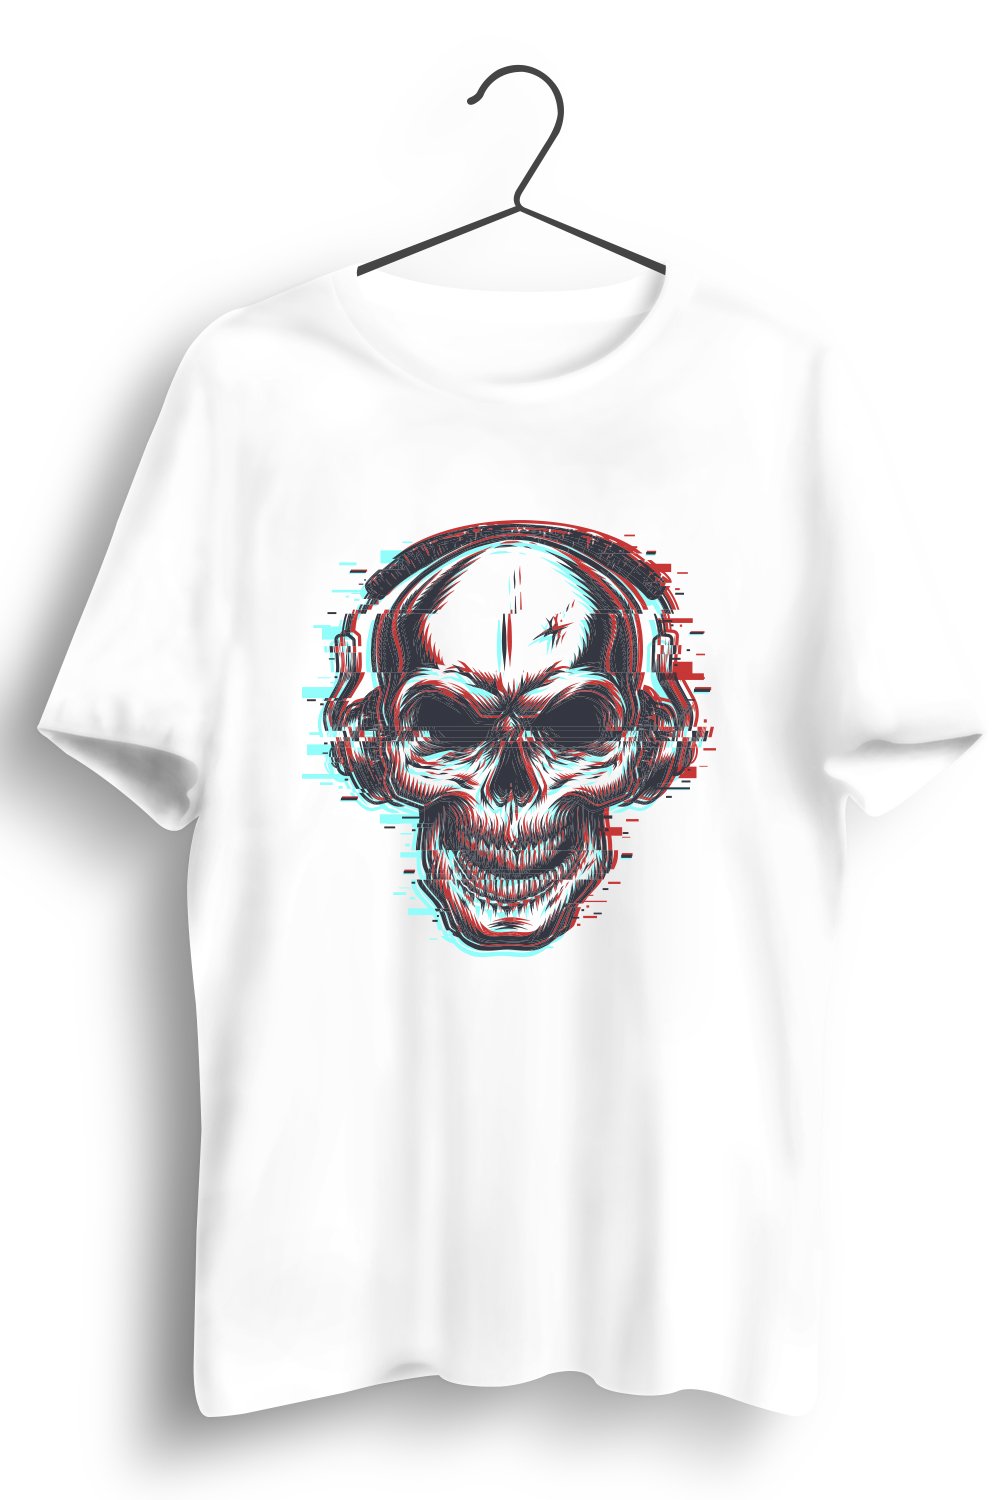 Skull Music Trance Graphic Printed White Tshirt